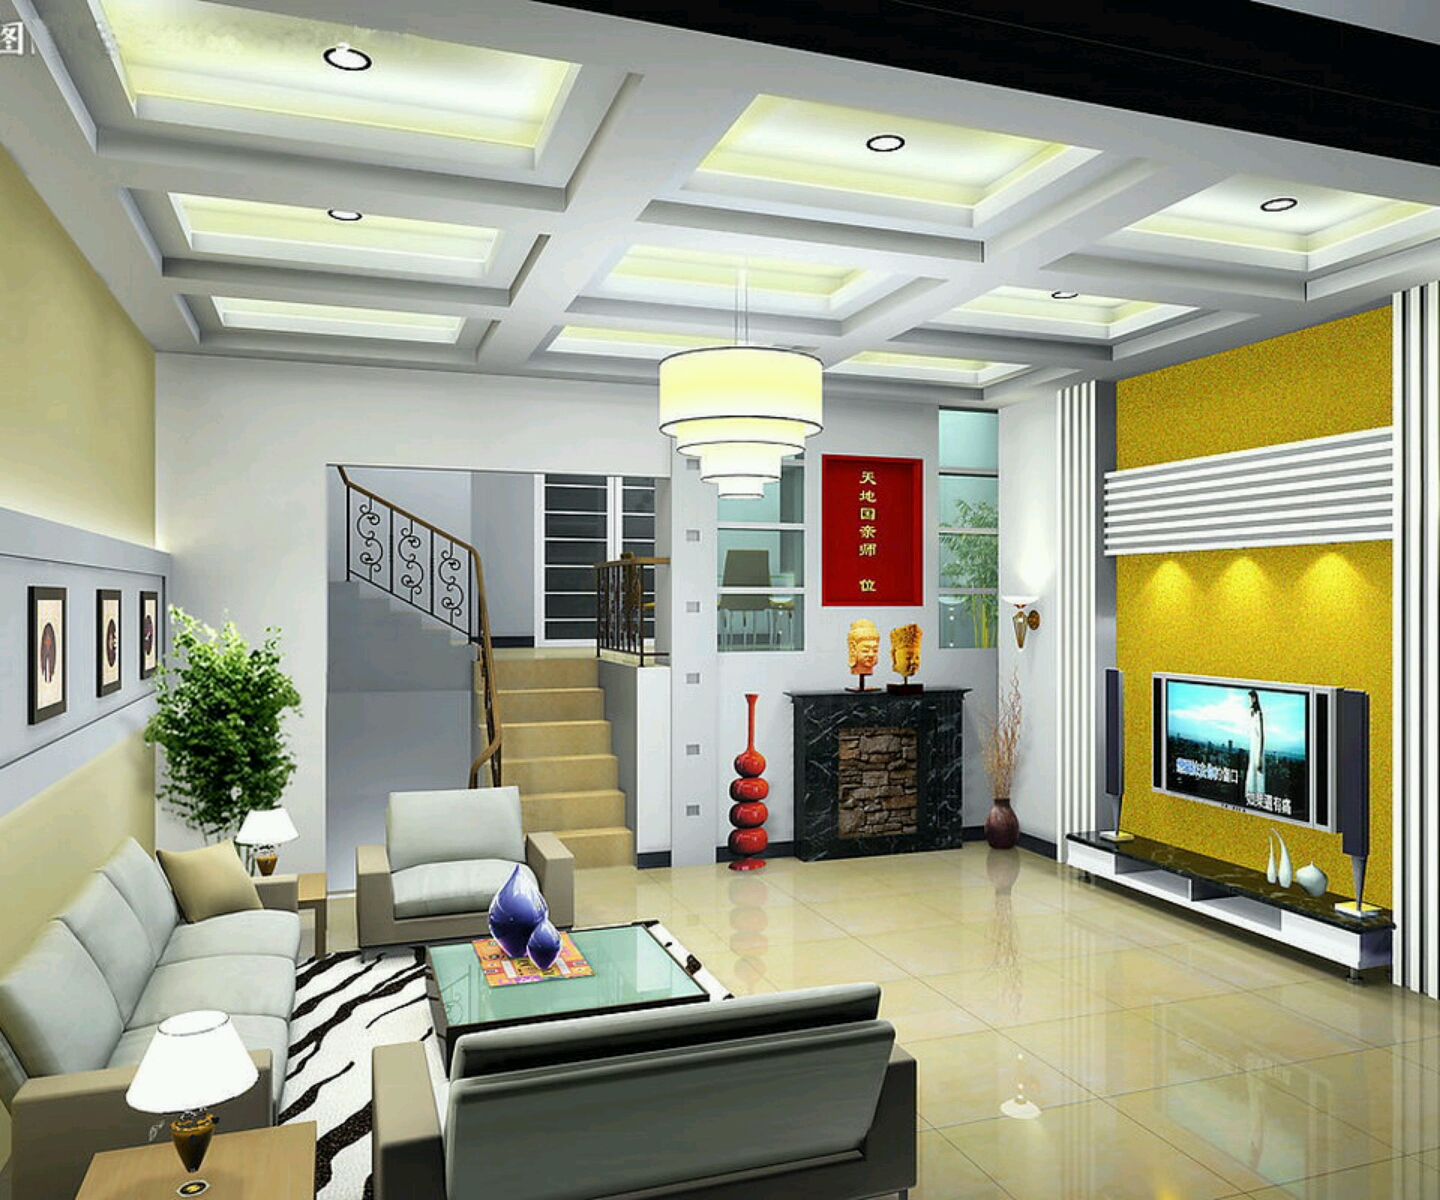 Gambar Desain Interior Rumah Minimalis Type 36 84 Info Lowongan